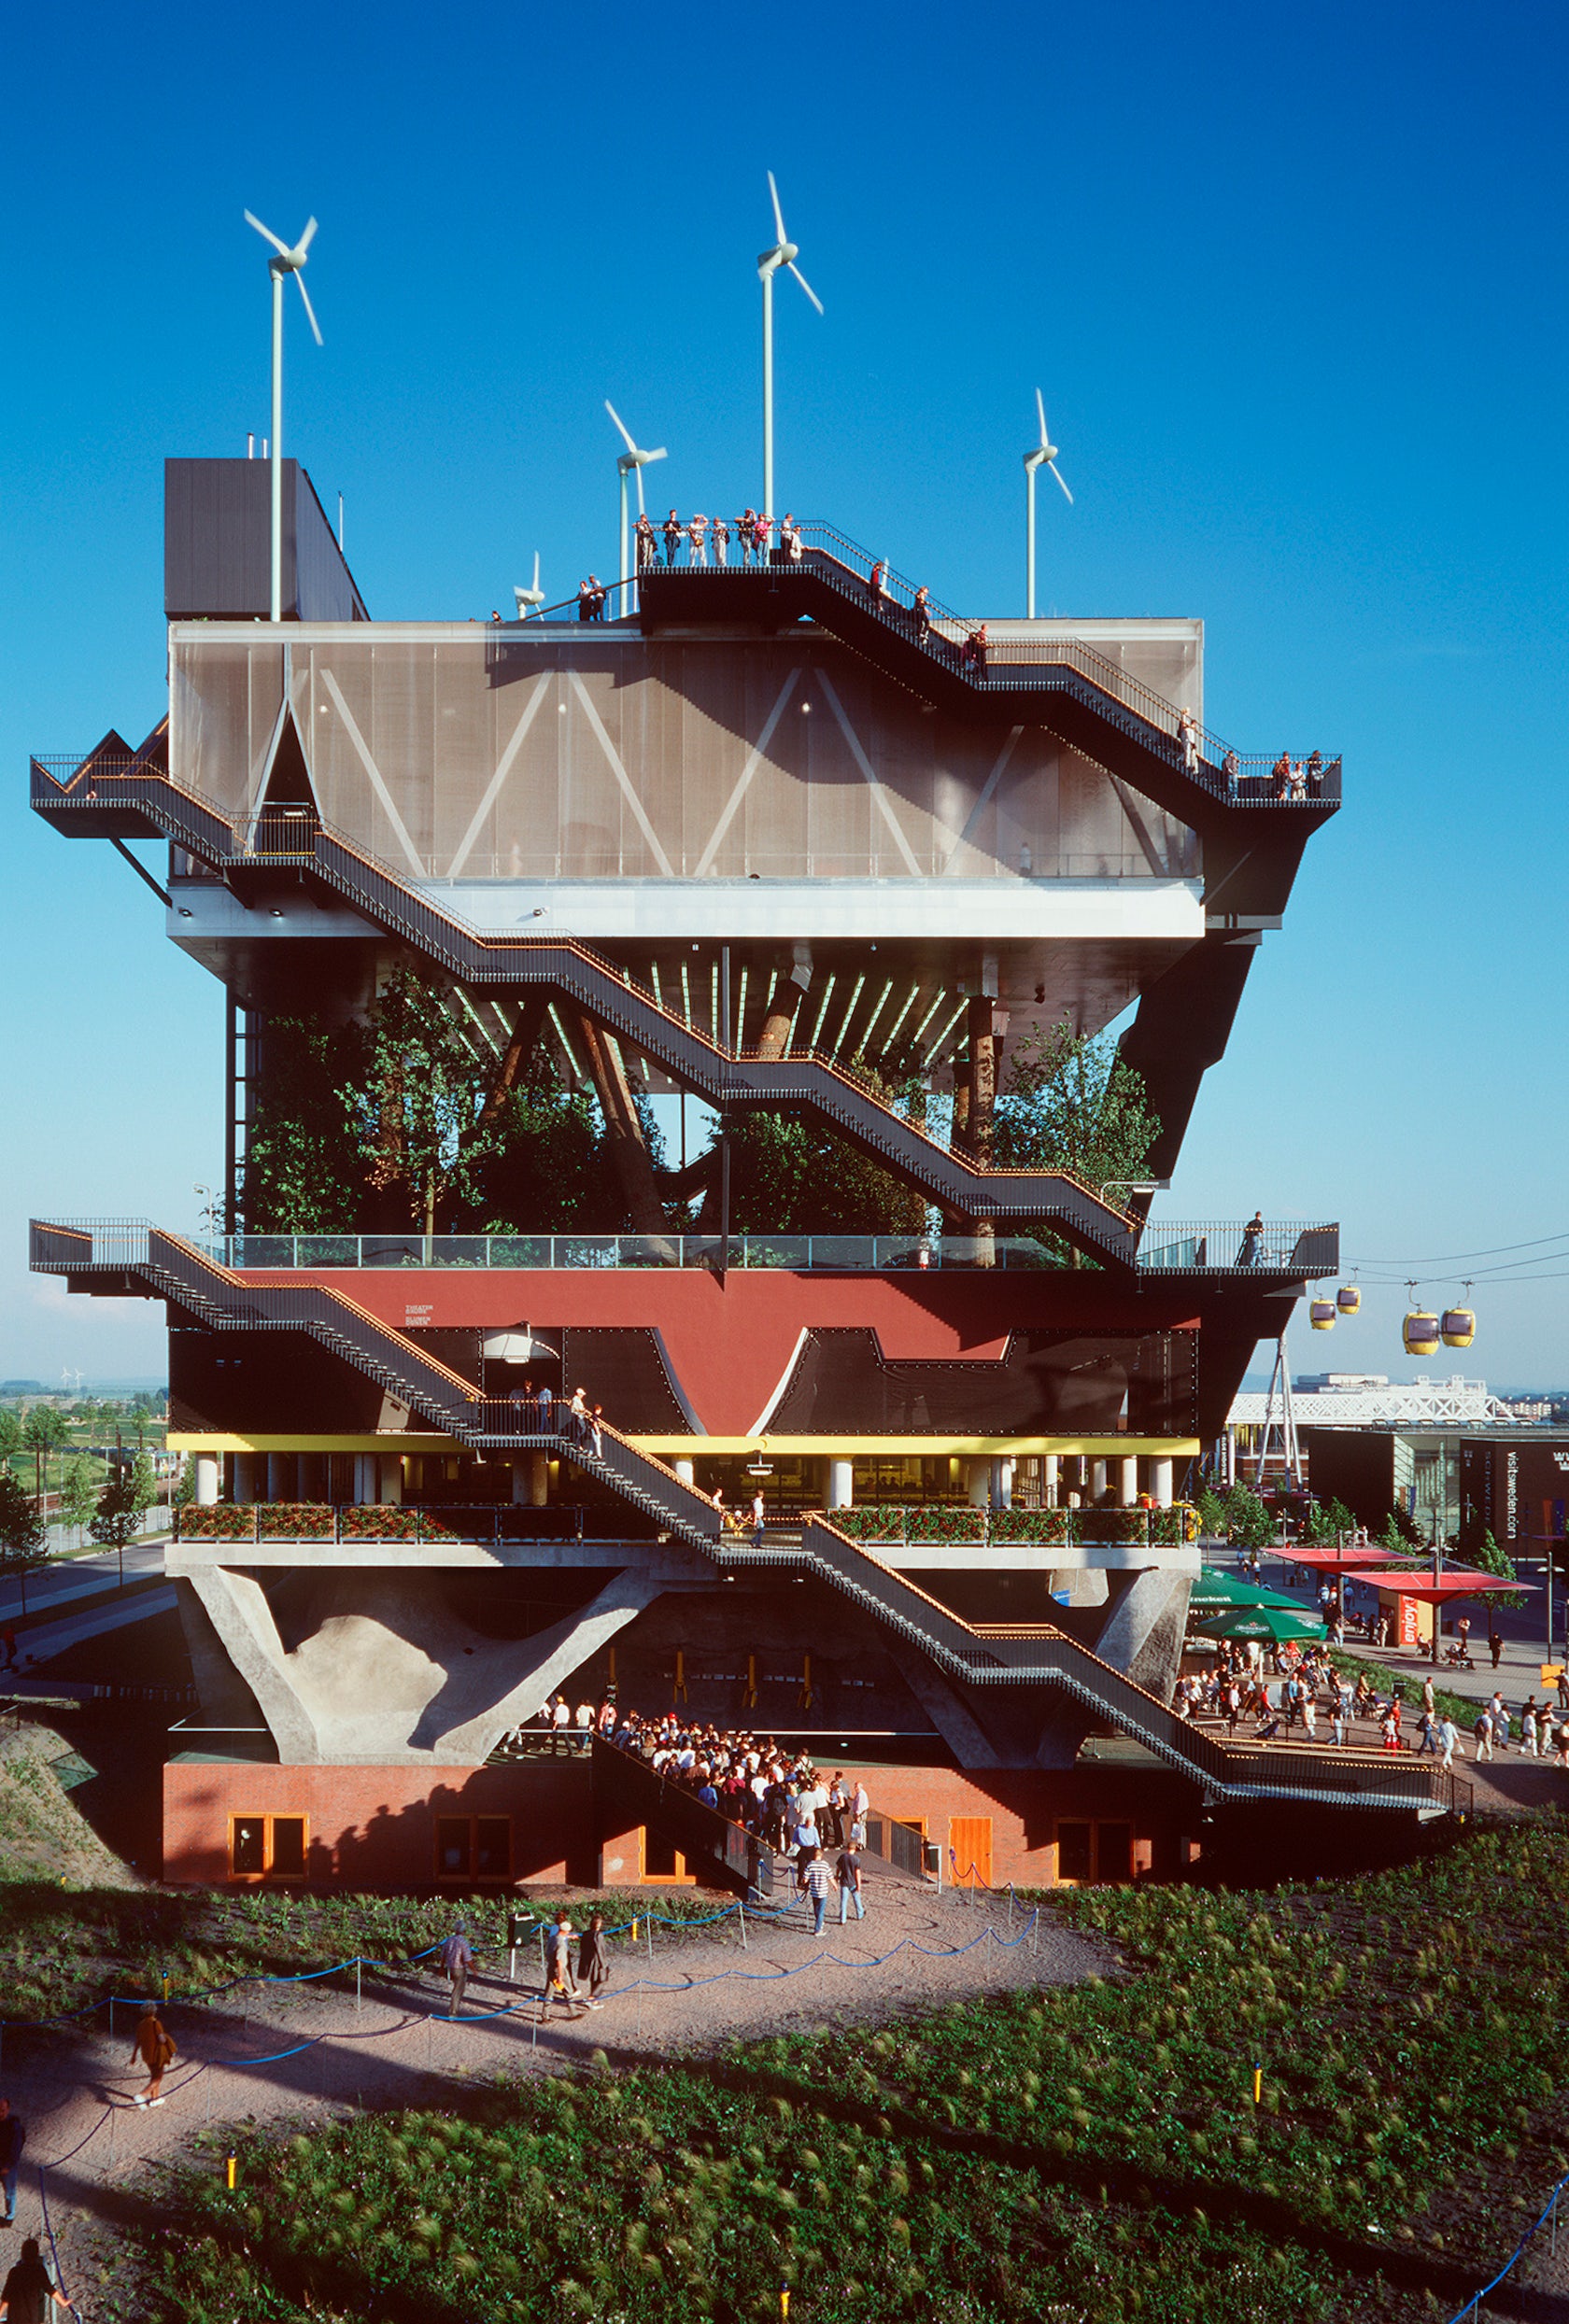 Expo 2000 Netherlands Pavilion by MVRDV - Architizer